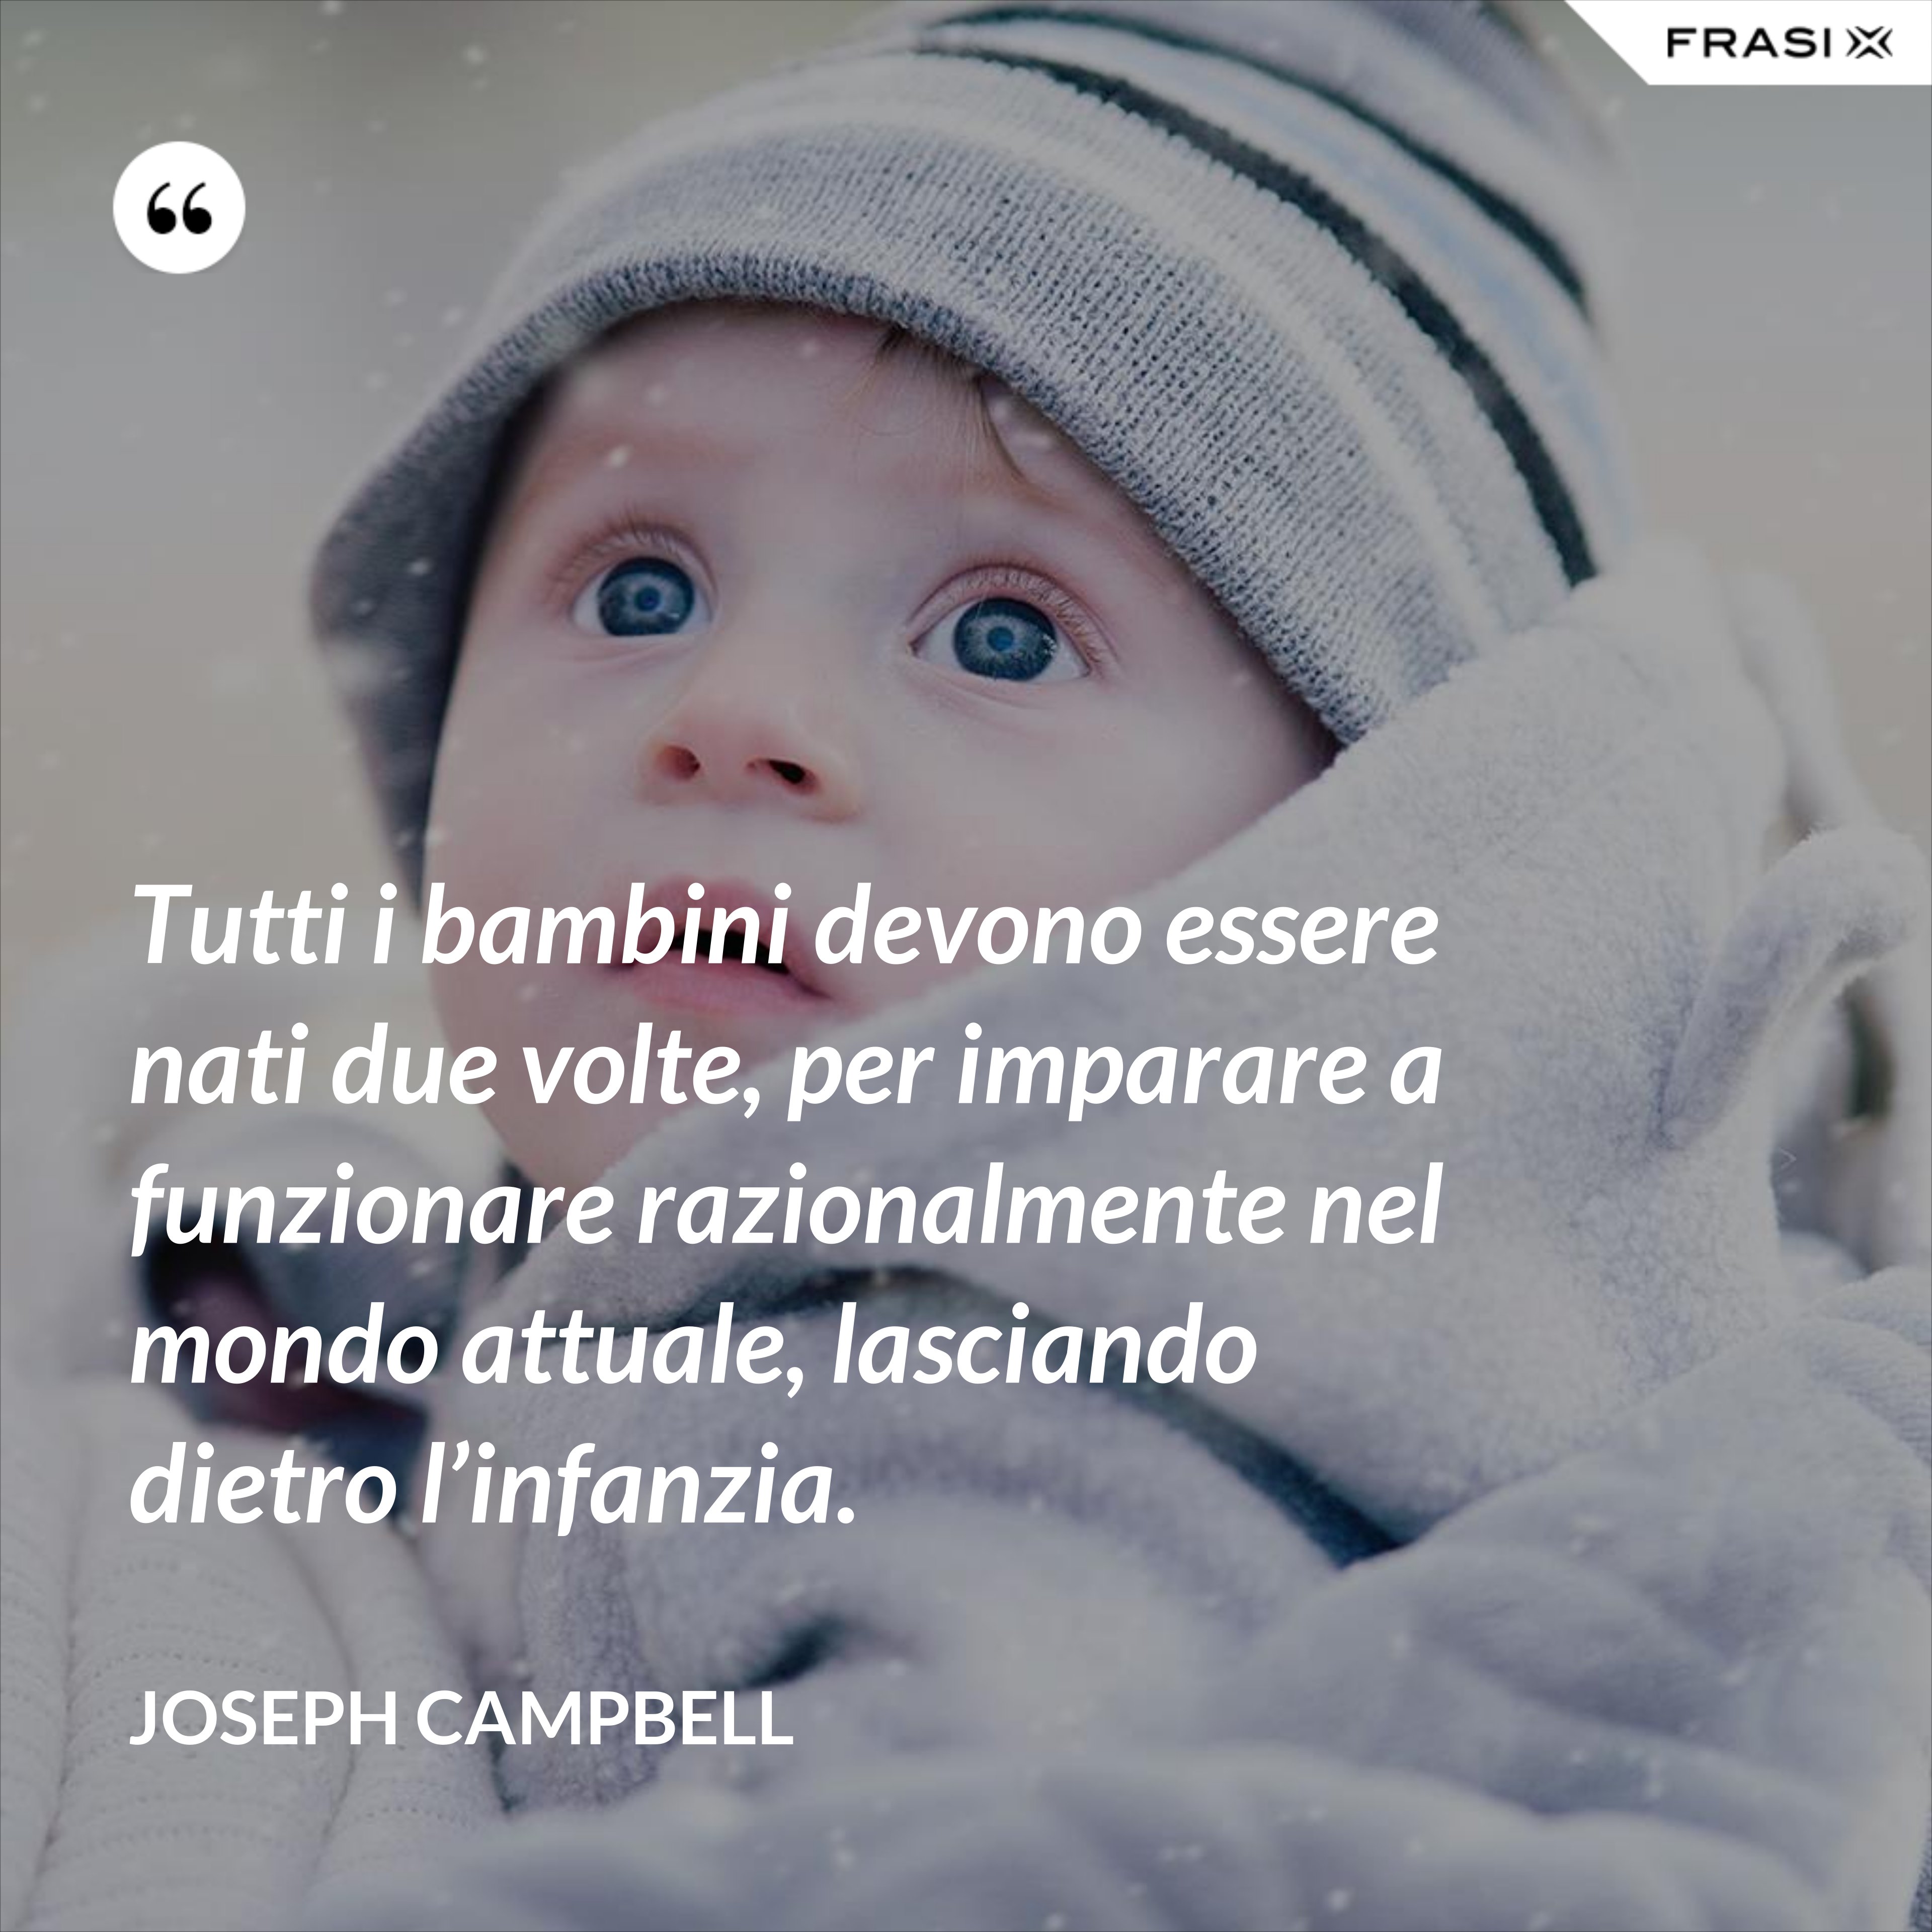 Tutti i bambini devono essere nati due volte, per imparare a funzionare razionalmente nel mondo attuale, lasciando dietro l’infanzia. - Joseph Campbell